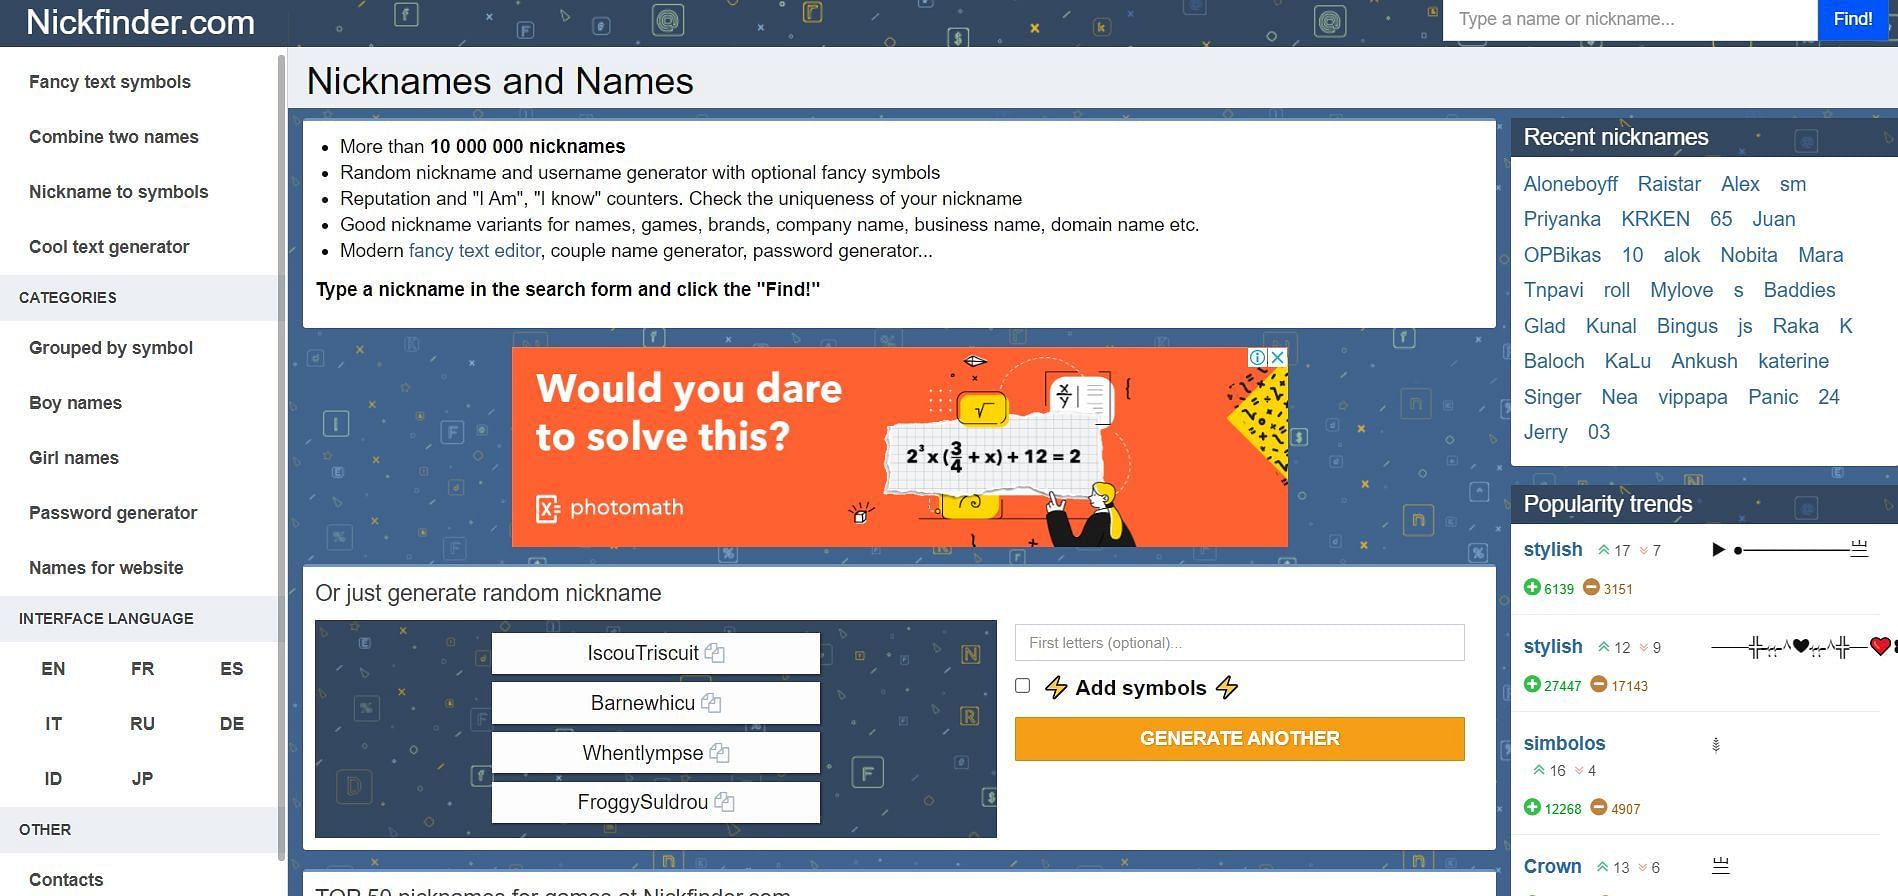 Popular Name Generator Website (Image via Nickfinder)